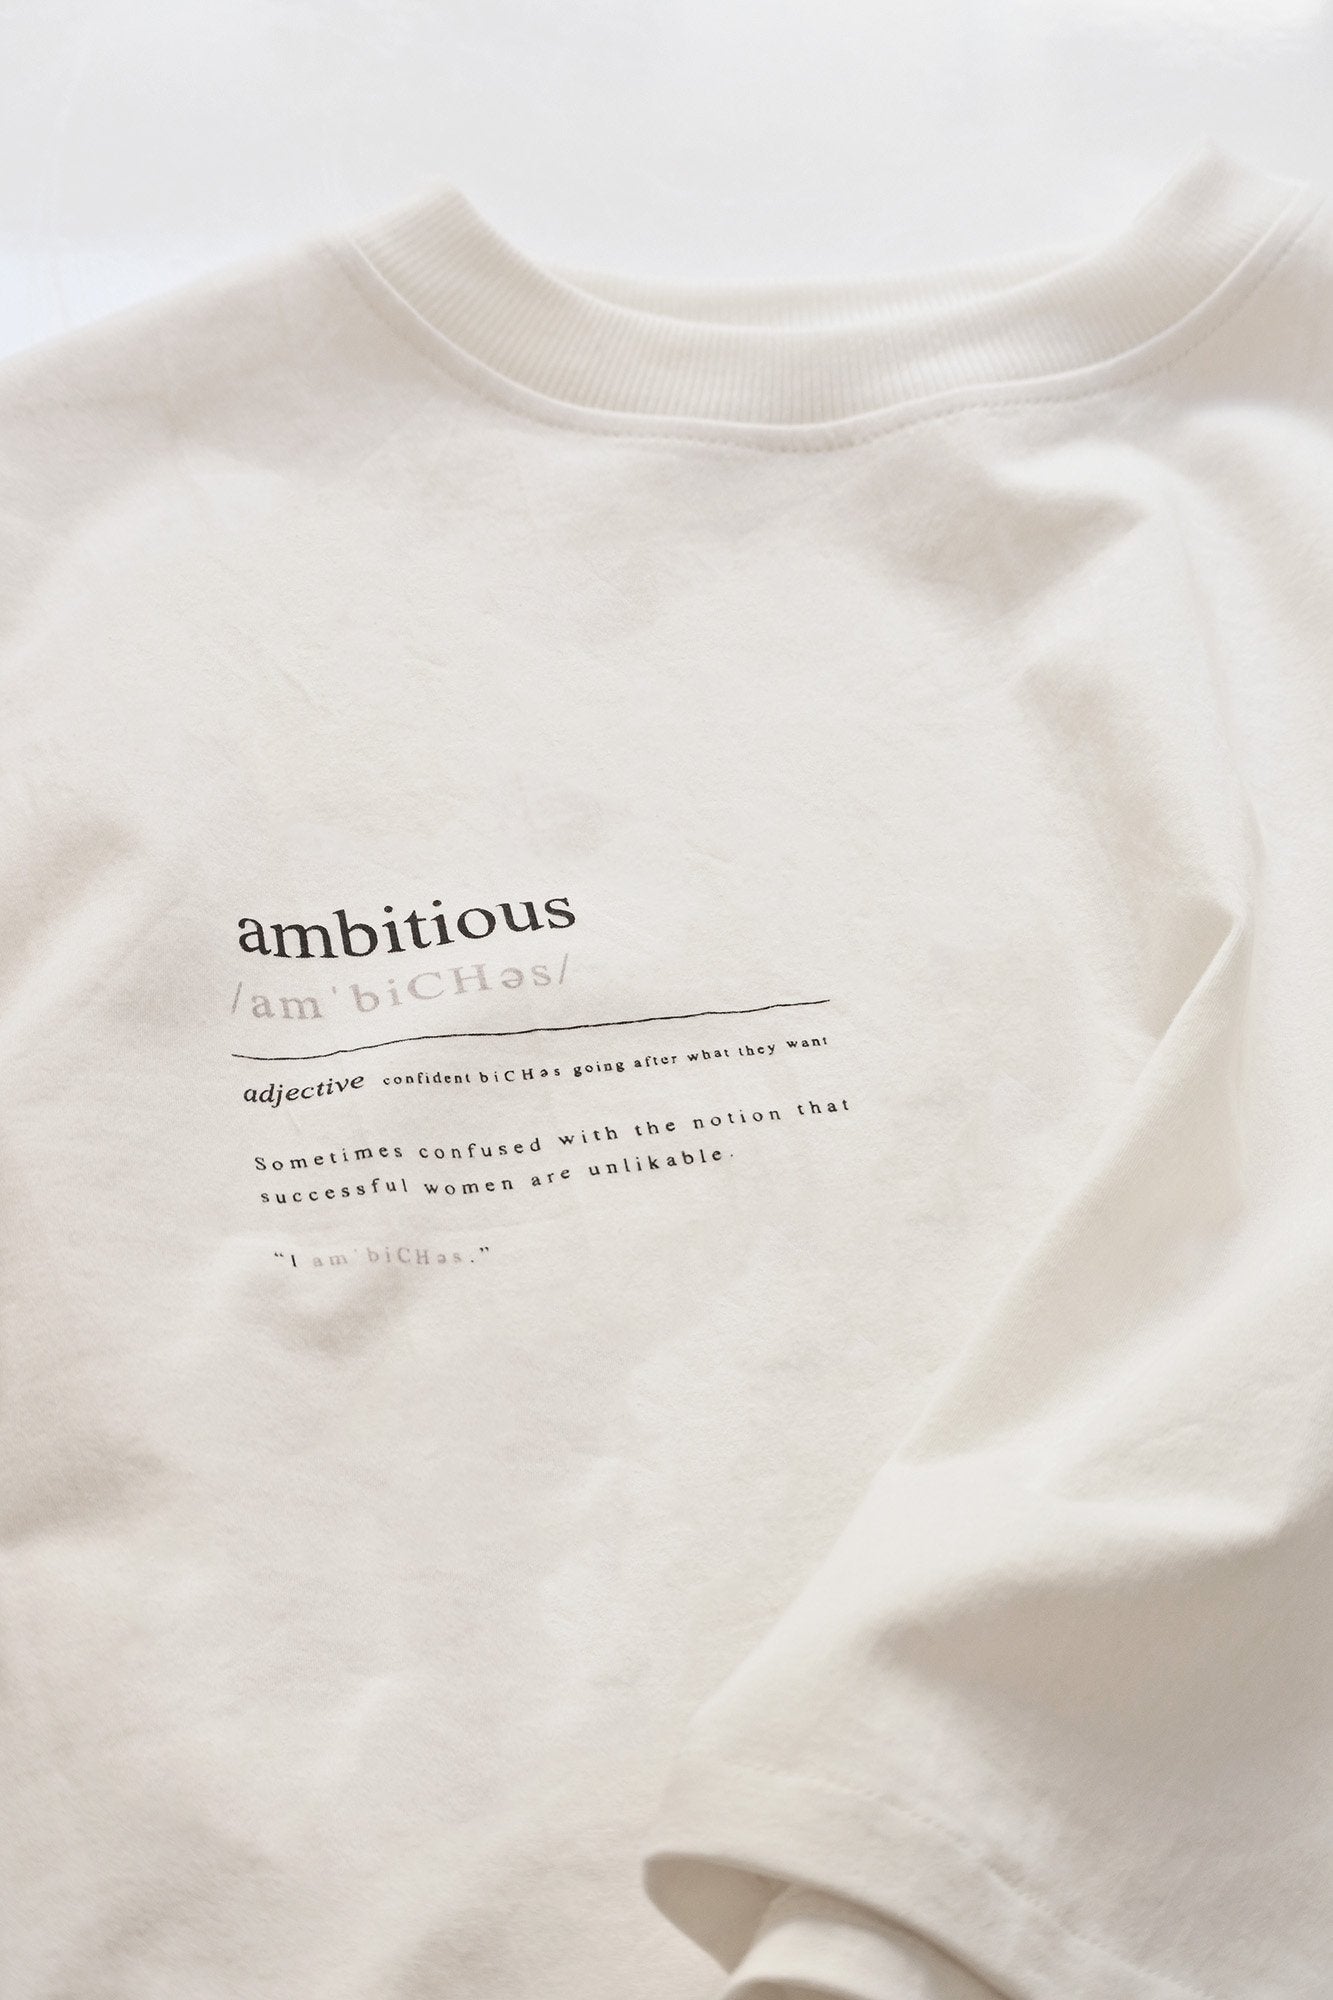 Short sleeve crop t-shirt - Ambitious